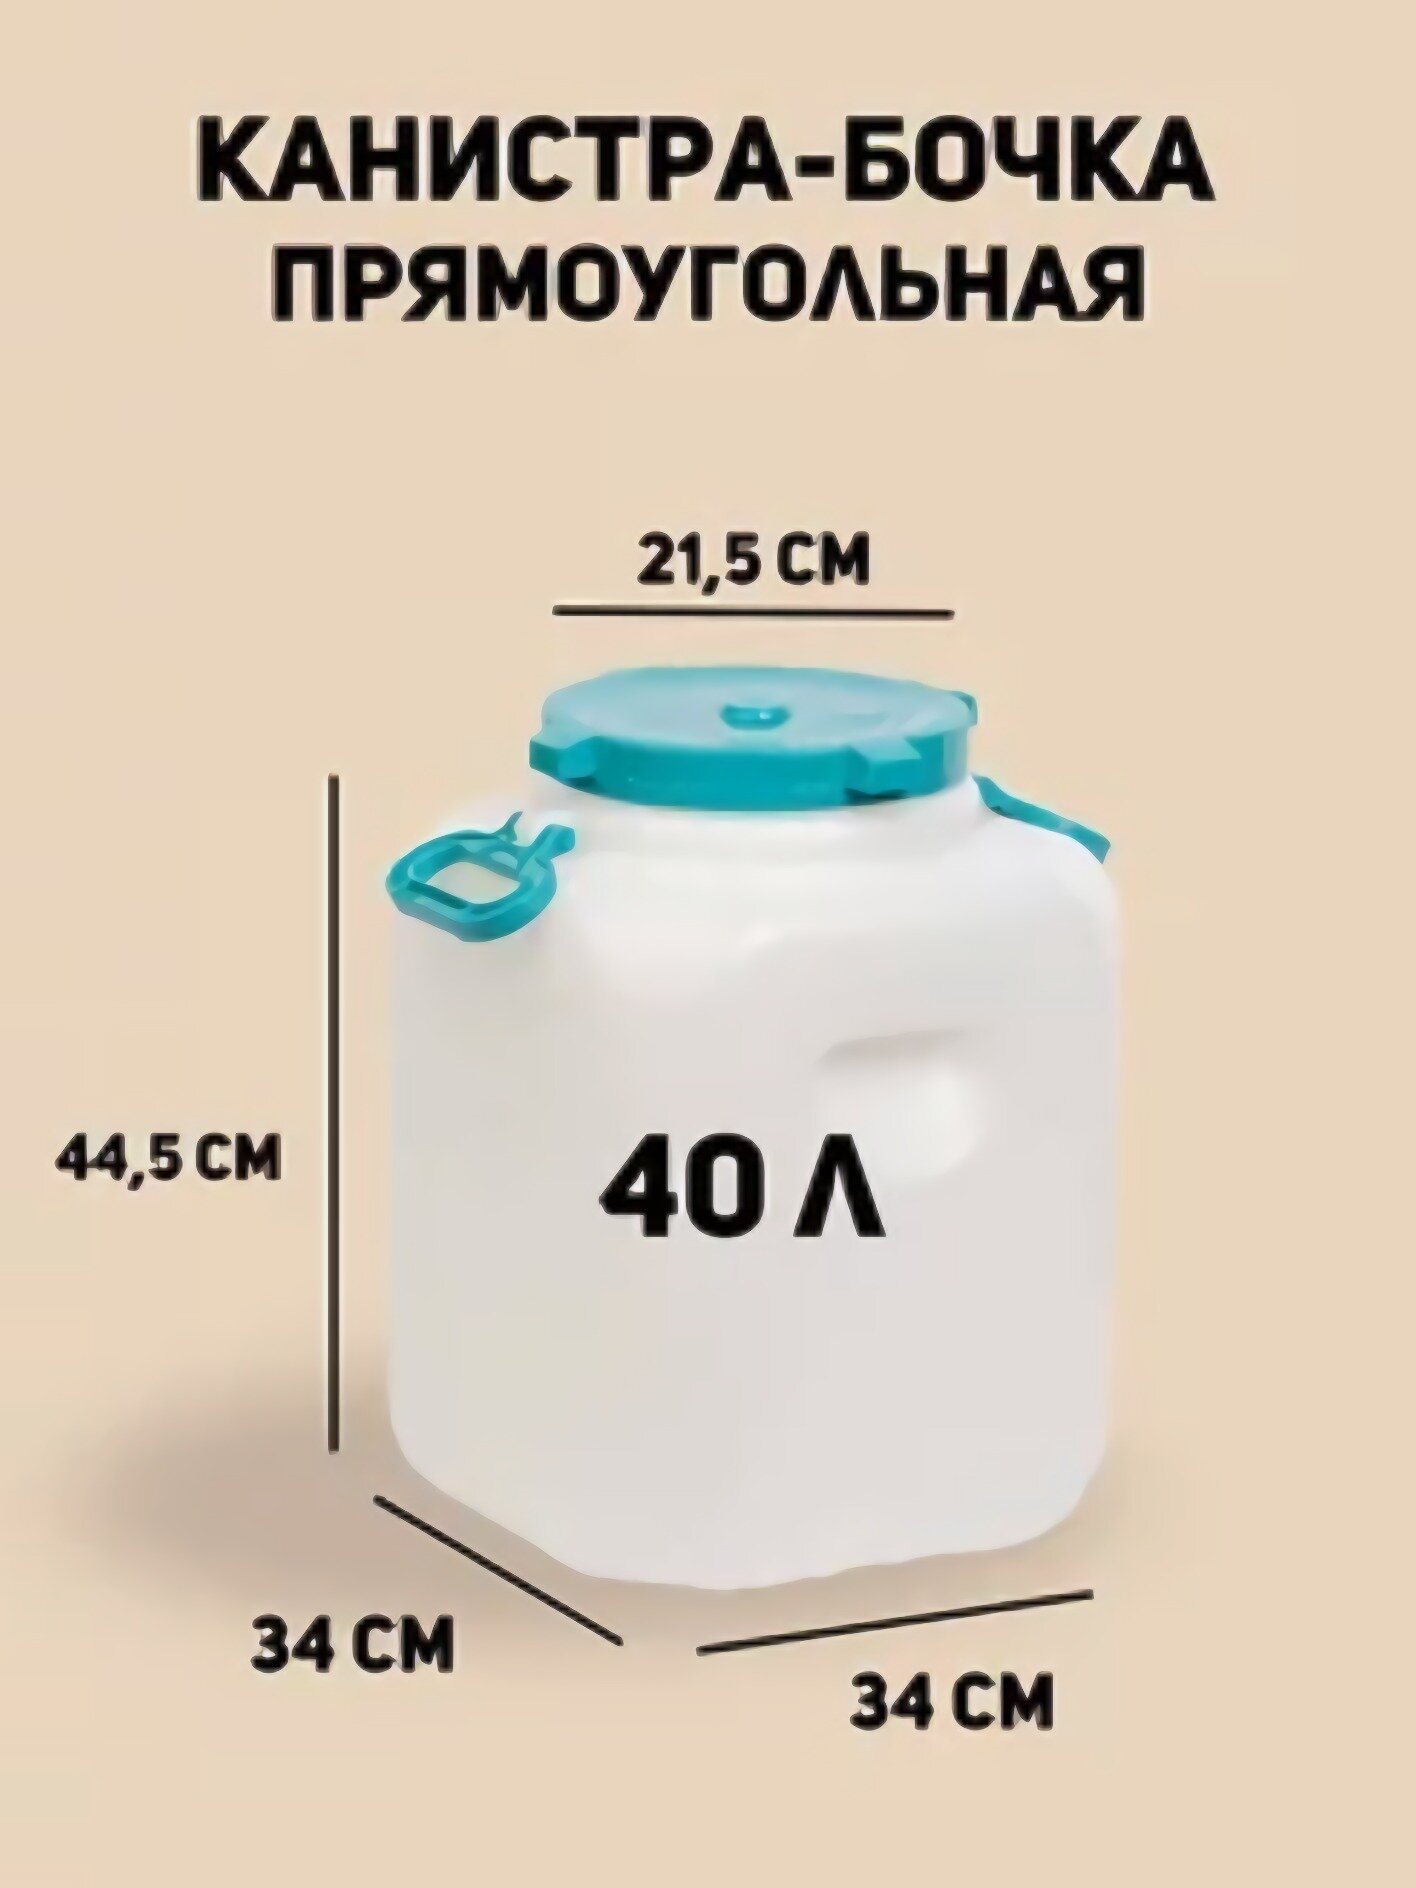 Канистра Альтернатива Байкал /М7597